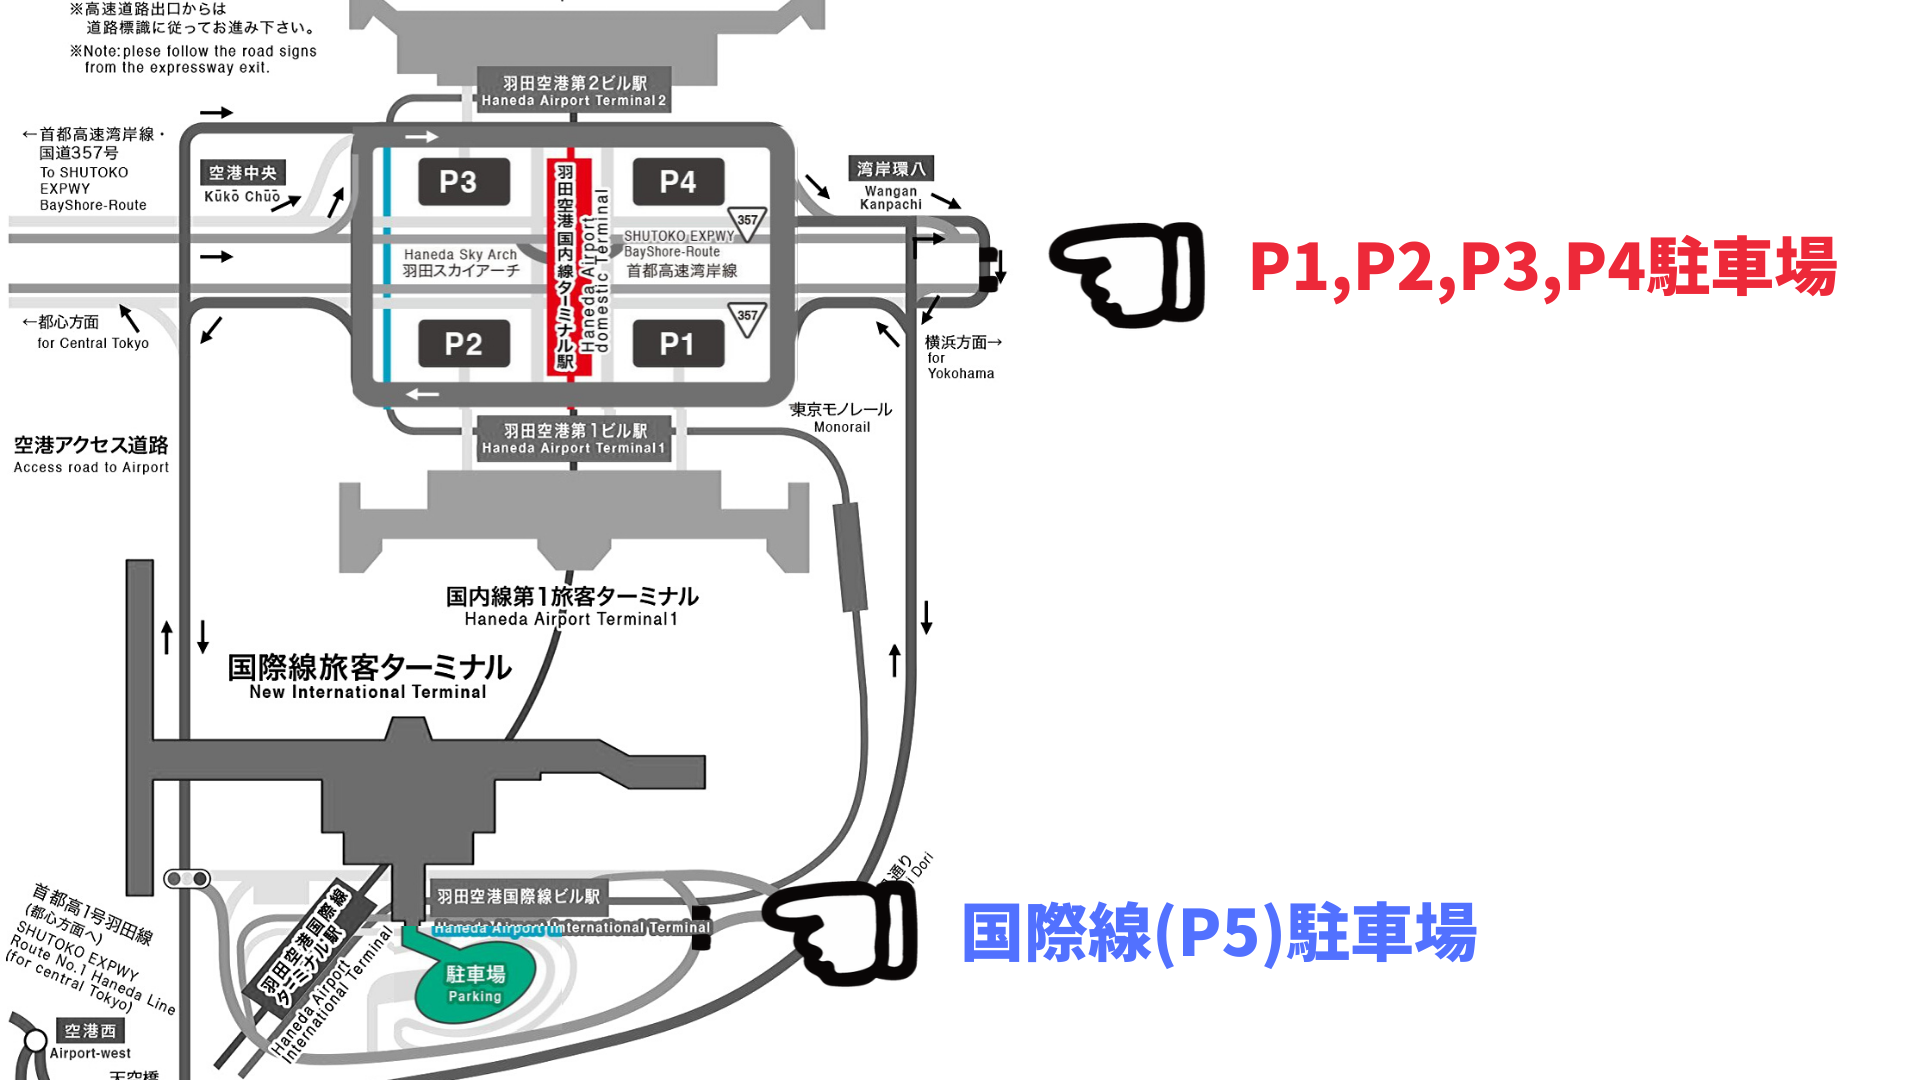 駐 羽田 空港 車場 p4